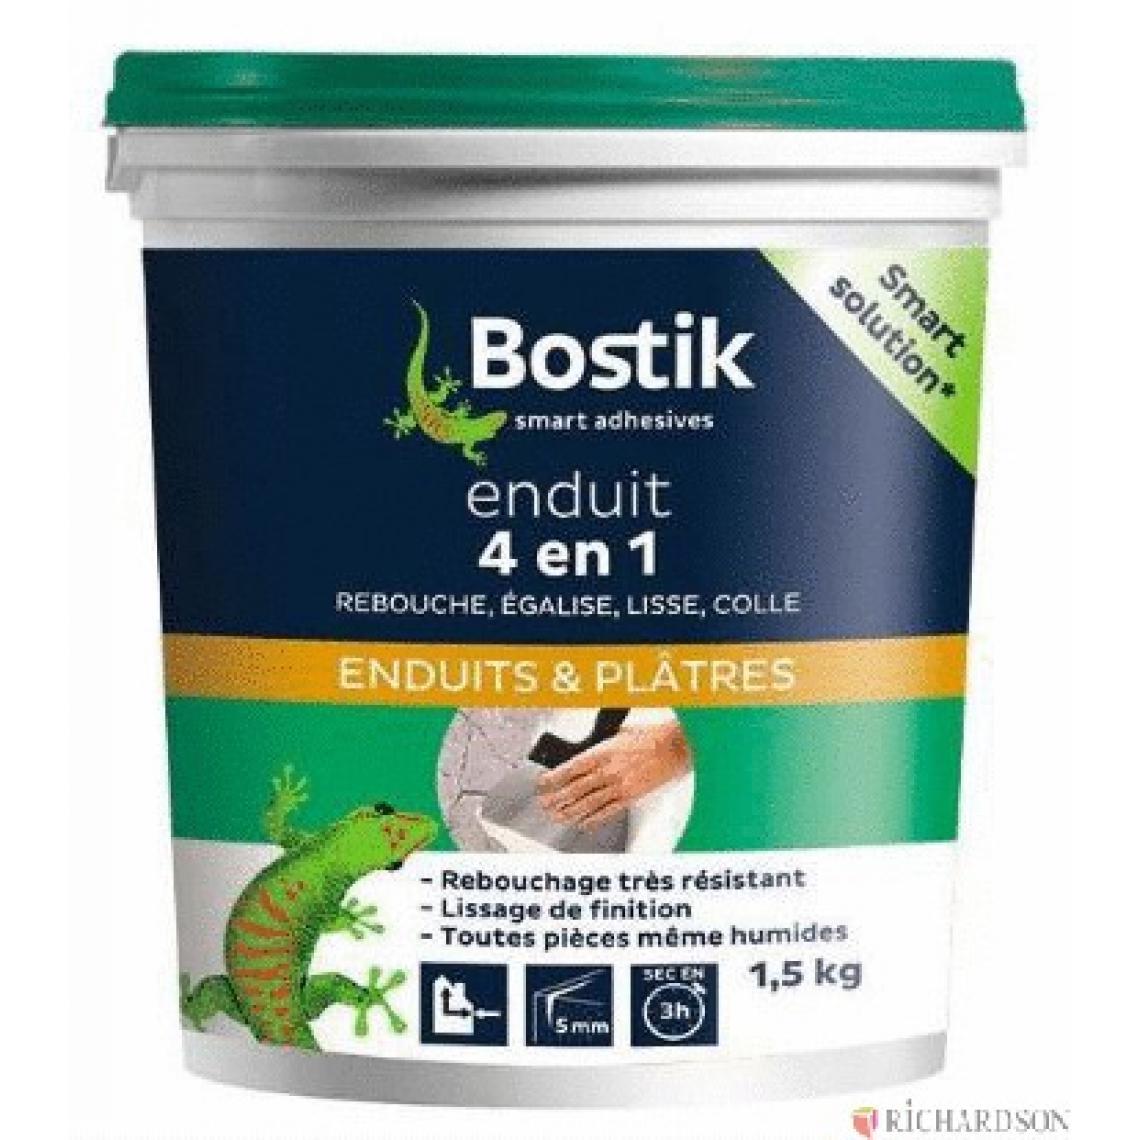 Bostiksa - Enduit 4 en 1 BOSTIK - 30604209 - Colles et pistolets à colle